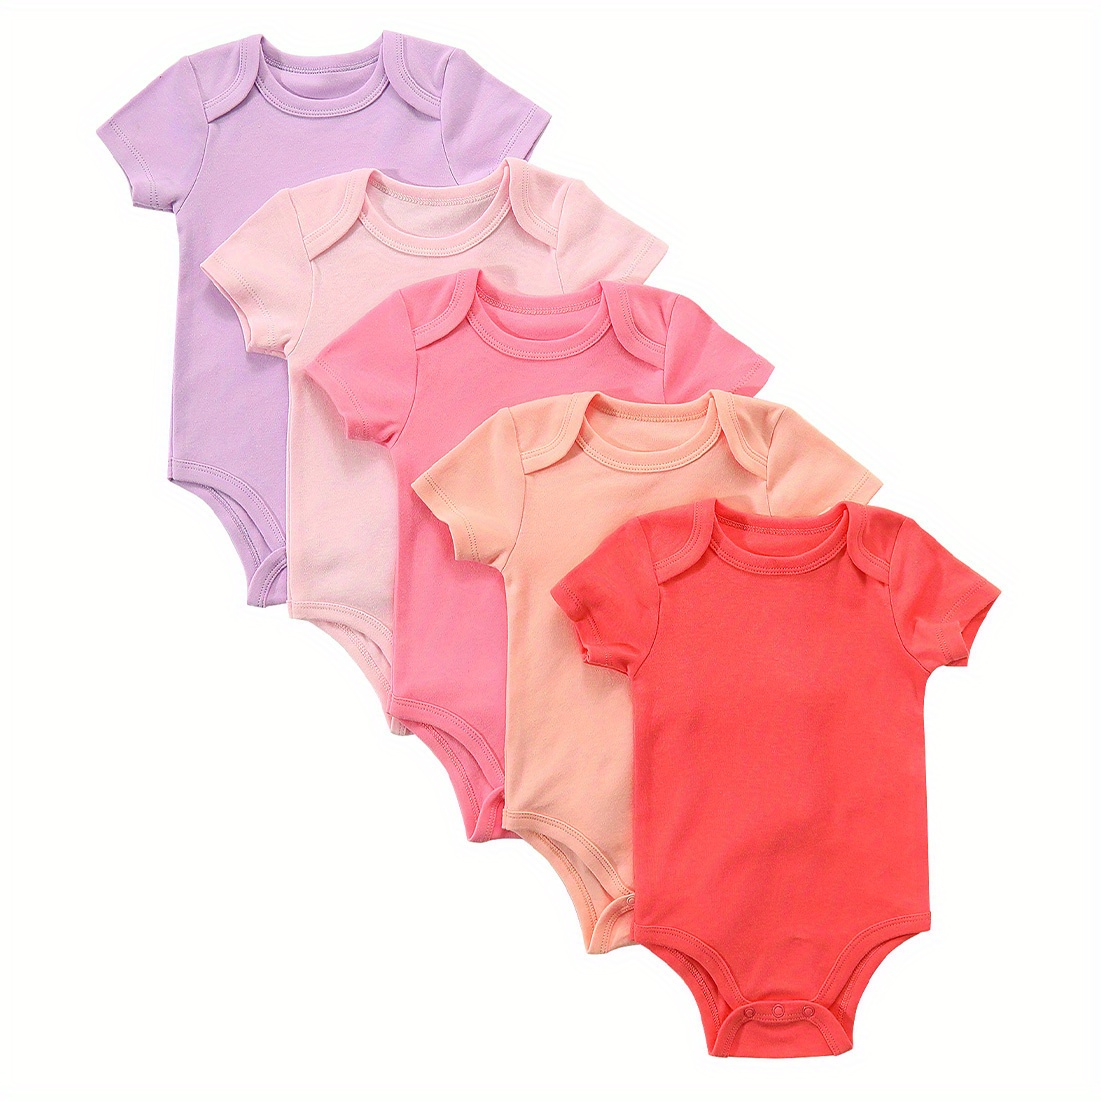 

5 paquets de bodies pour bébés filles, combinaisons à manches courtes, combinaisons 100 % coton de couleur bonbon pour nouveau-nés et nourrissons